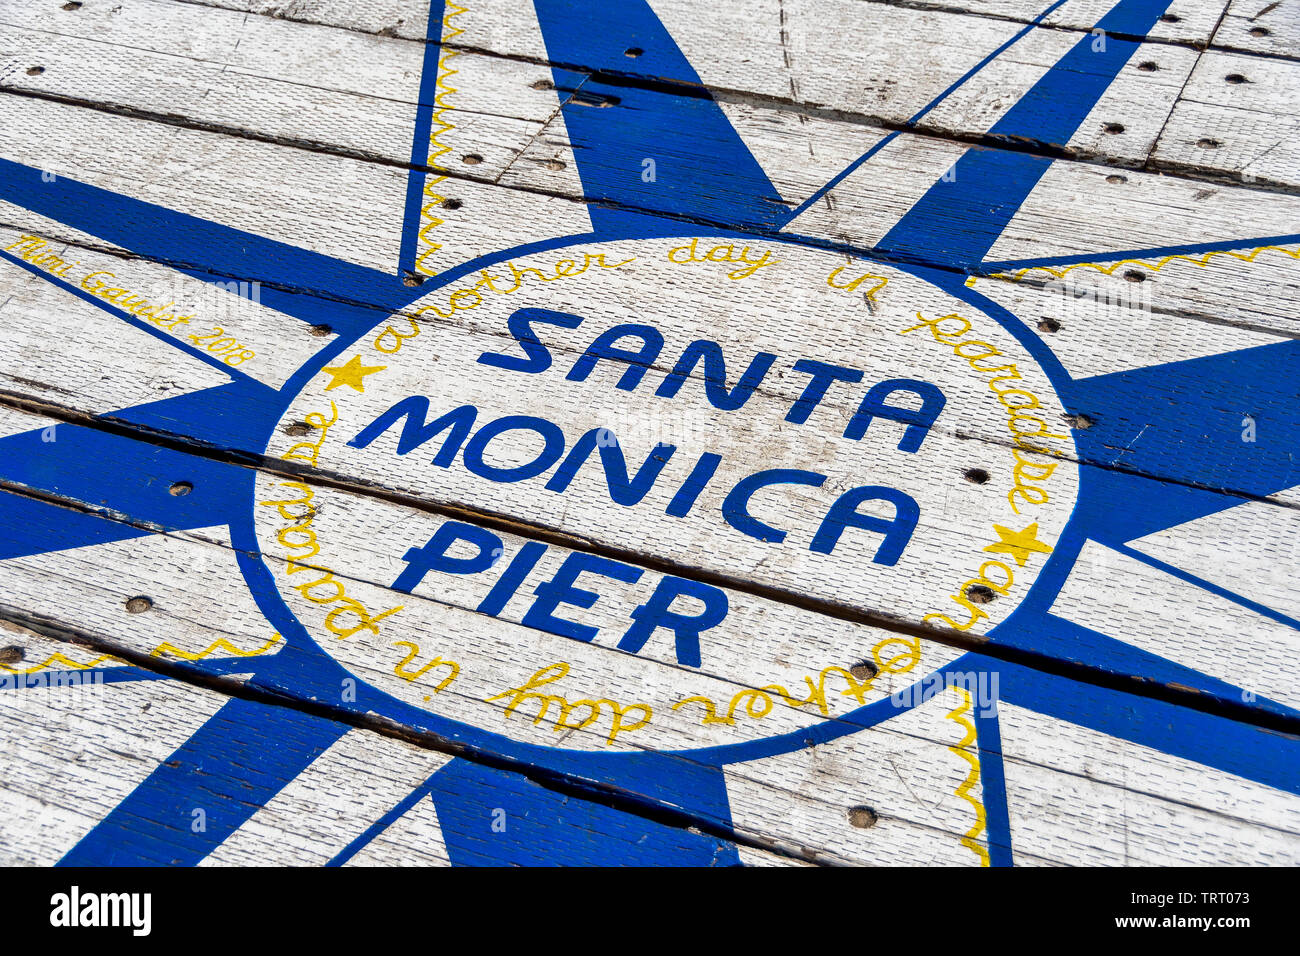 Zeichen auf den Boden sagt, Santa Monica Pier, ein weiterer Tag im Paradies. Das Zeichen wird am Ende der Santa Monica Pier entfernt, in Südkalifornien. Stockfoto